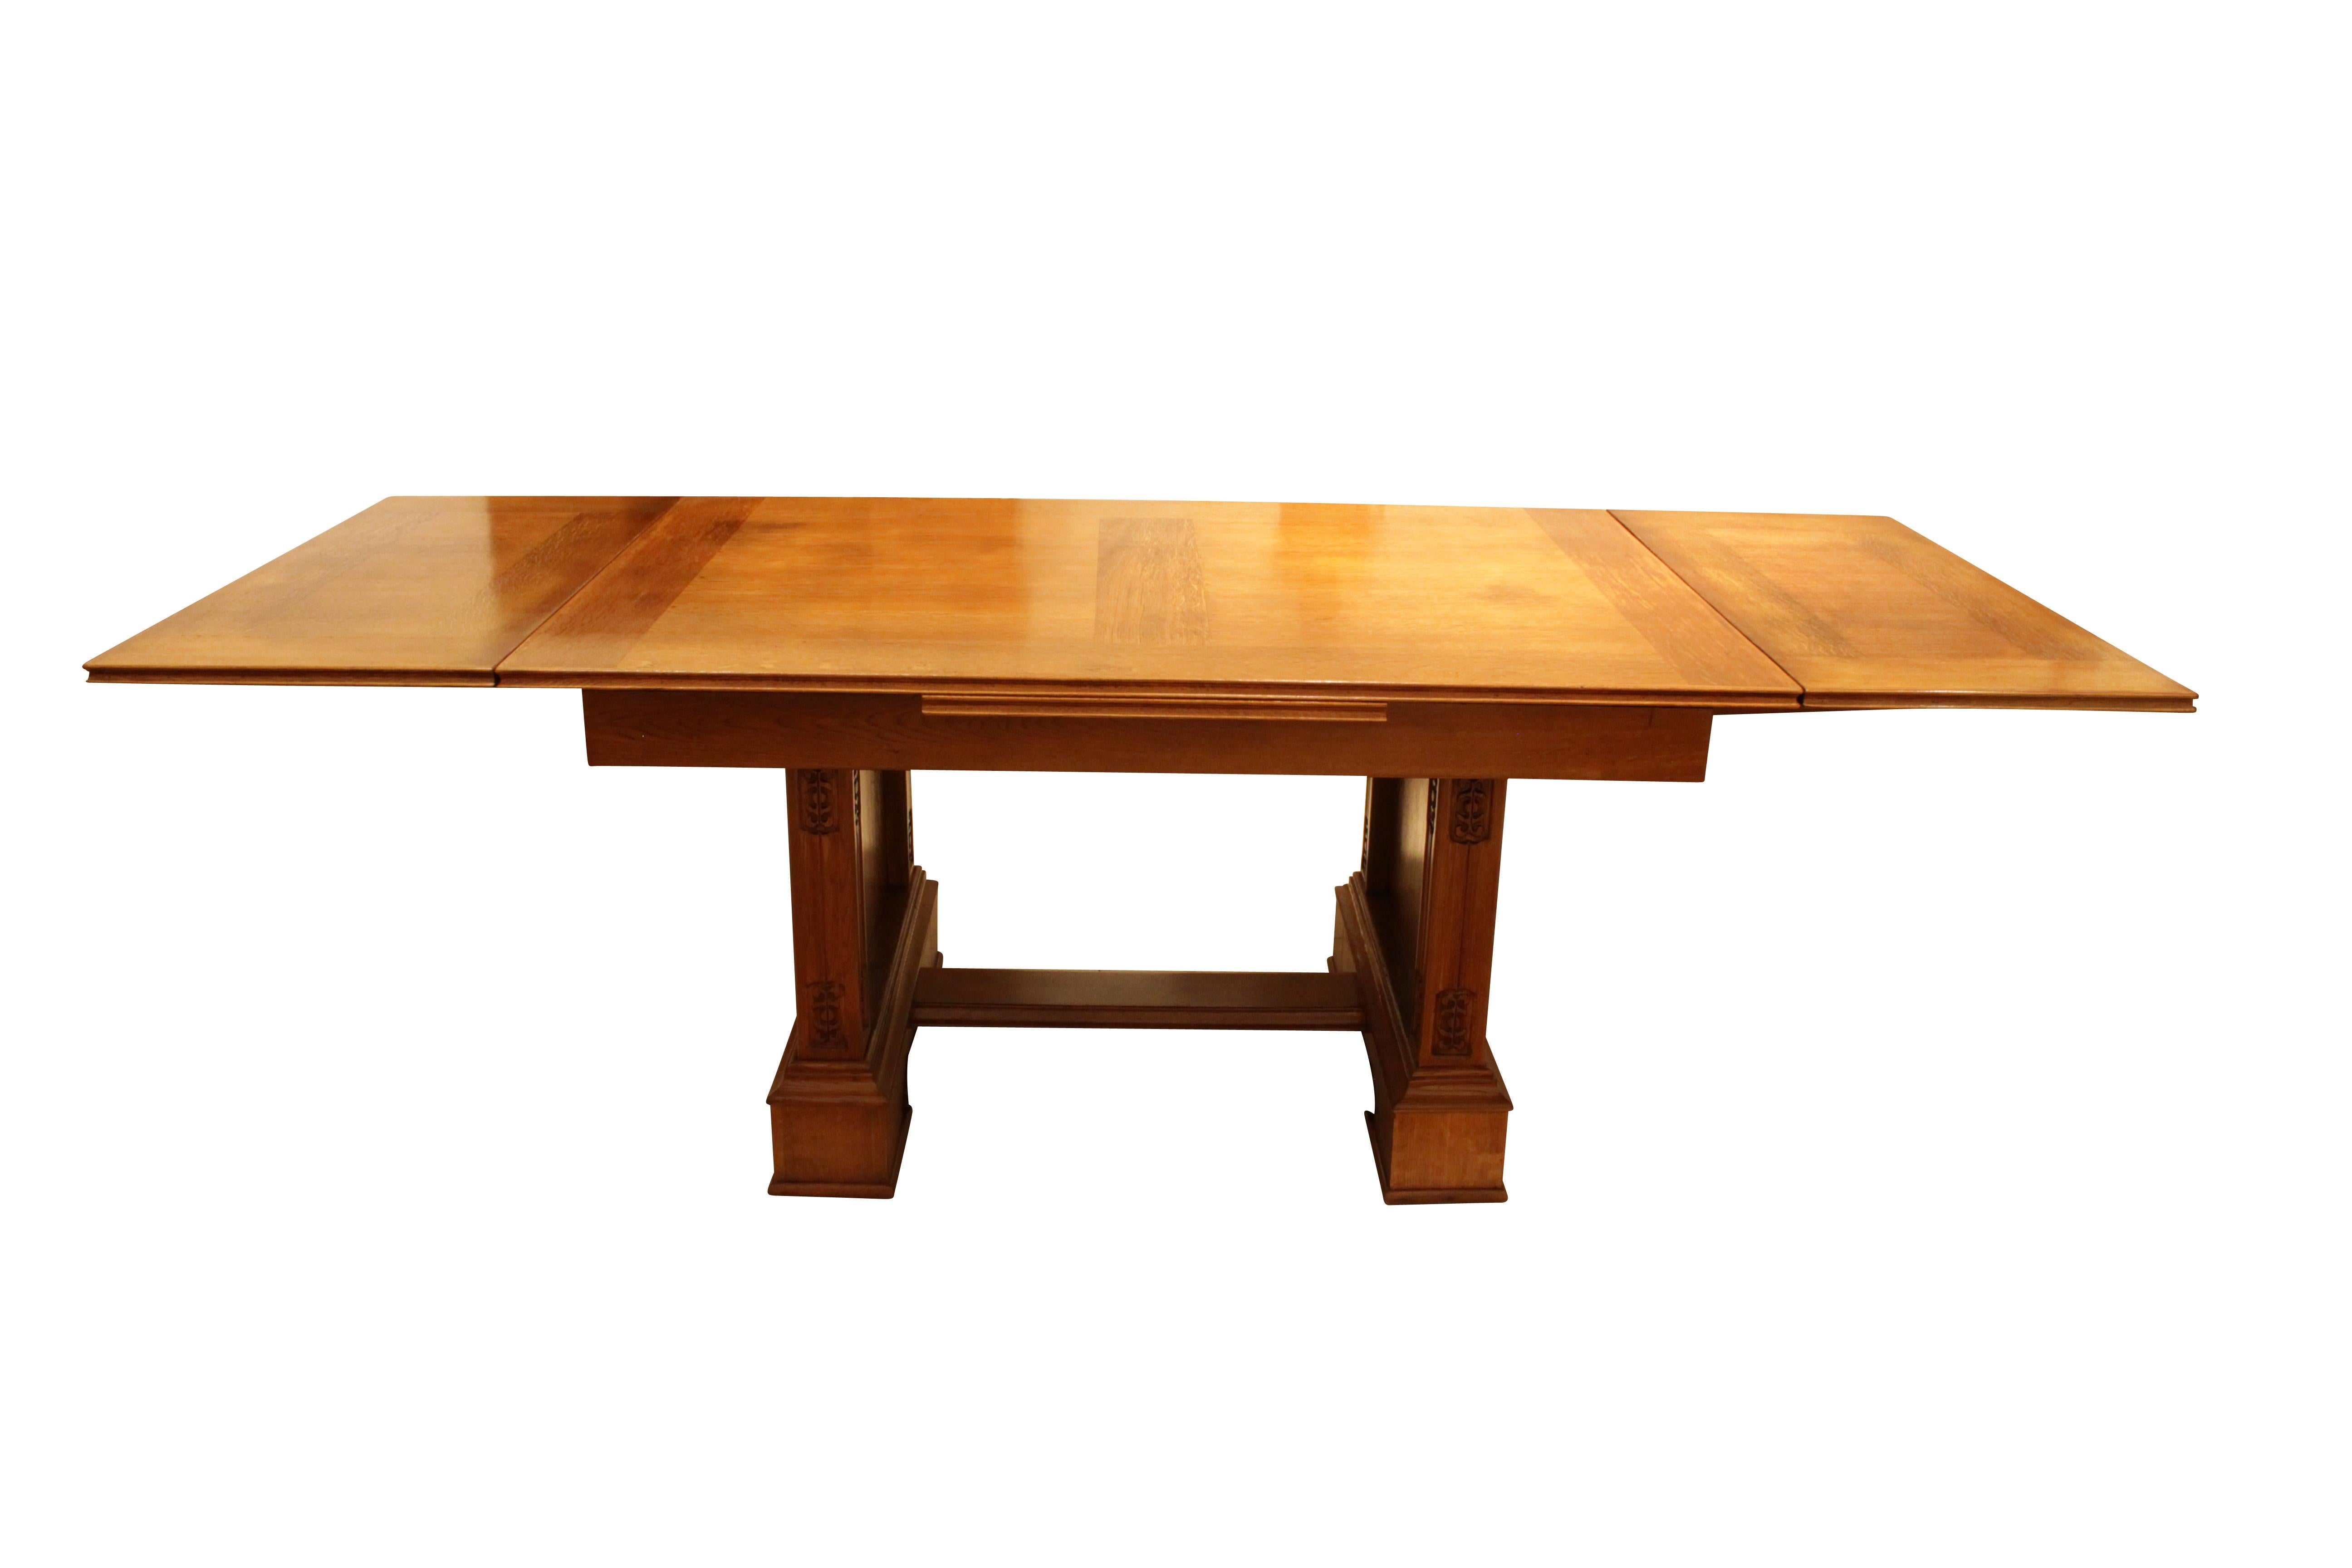 Schöner großer Tisch aus Eichenholz aus der Zeit des Jugendstils. Der Tisch kann bis zu einer Länge von 2,48 m ausgezogen werden. In sehr gutem restauriertem Zustand.